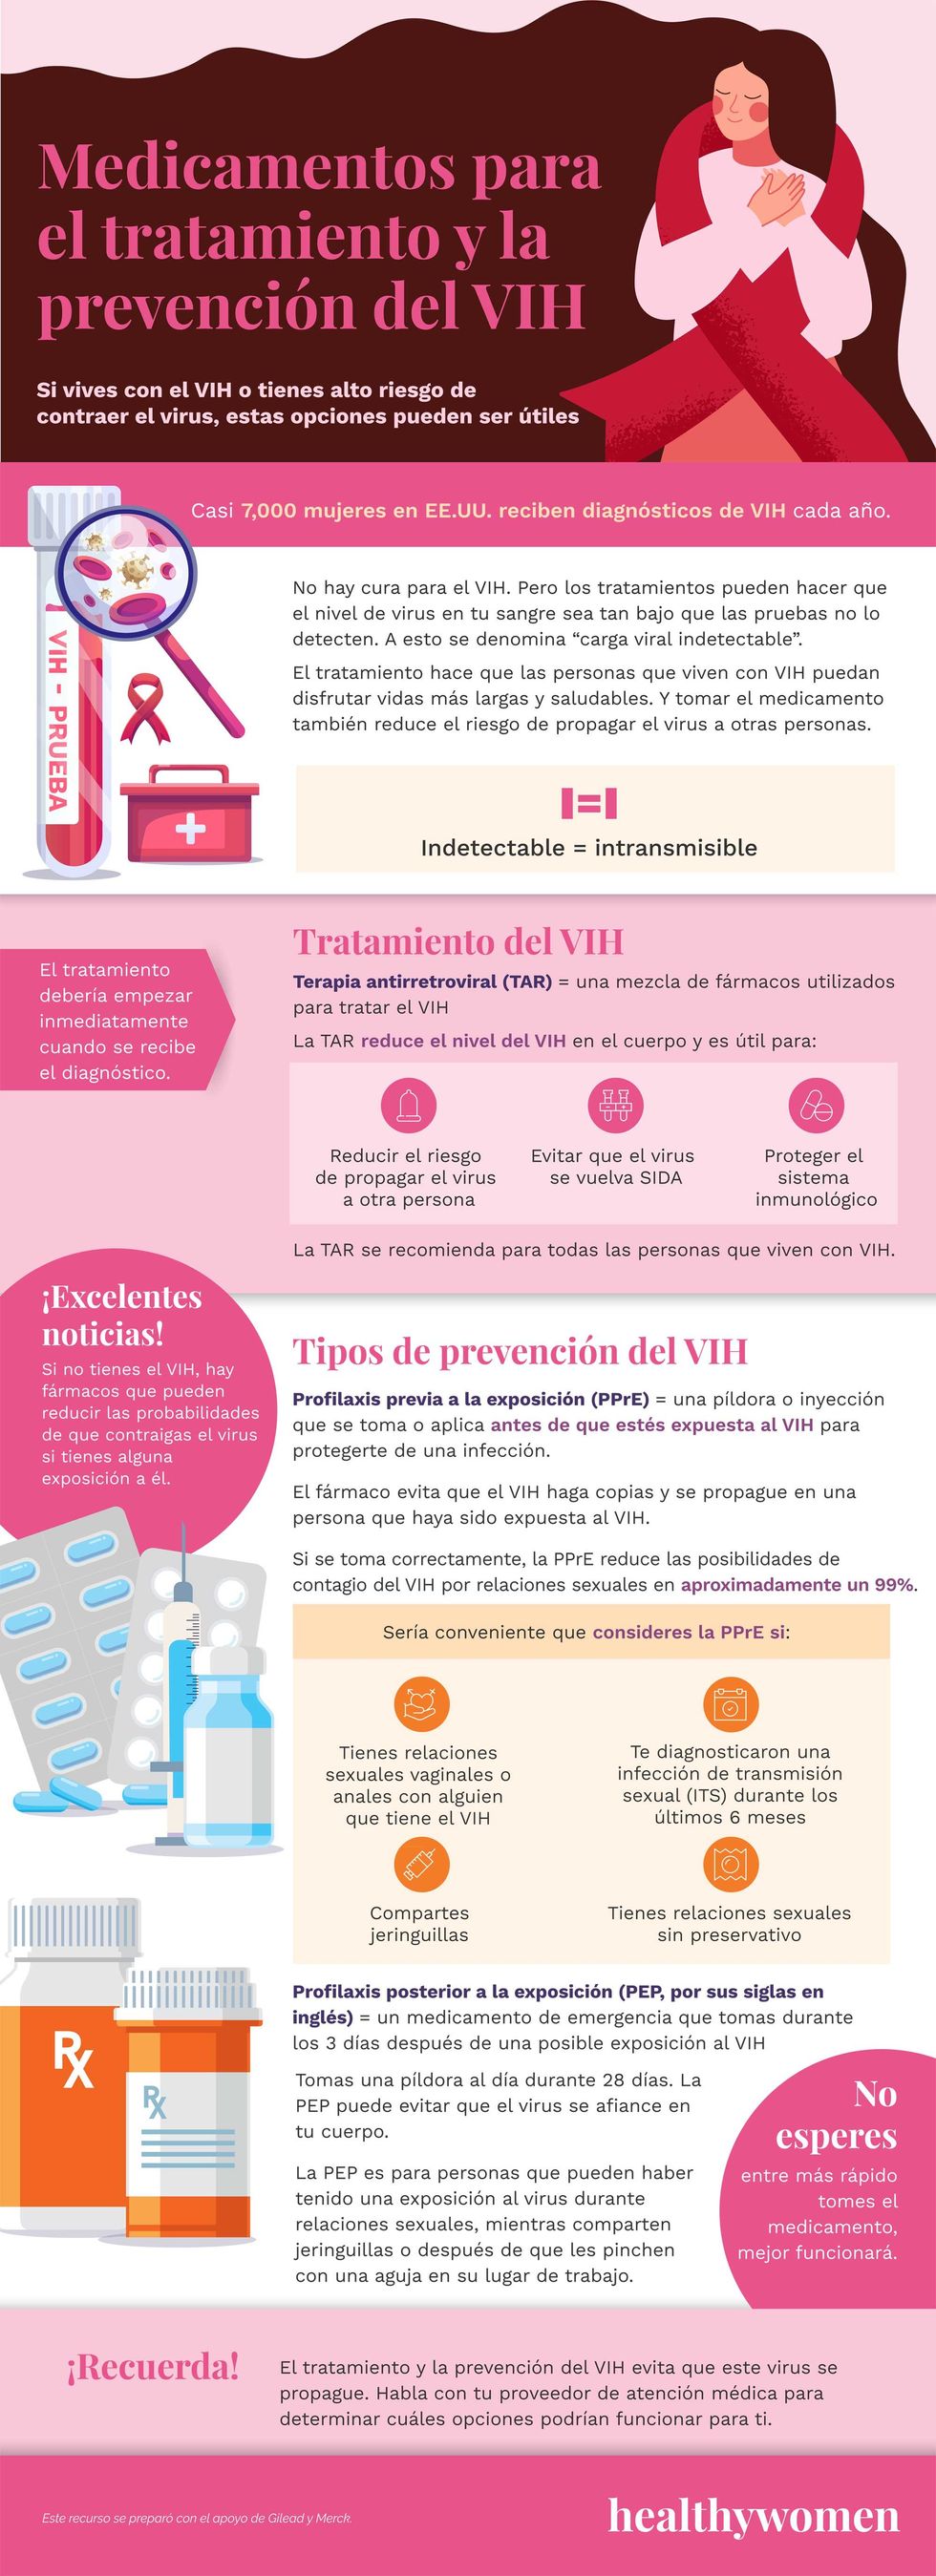 Infographic Medicamentos para el tratamiento y la prevenci\u00f3n del VIH . Click the image to open the PDF